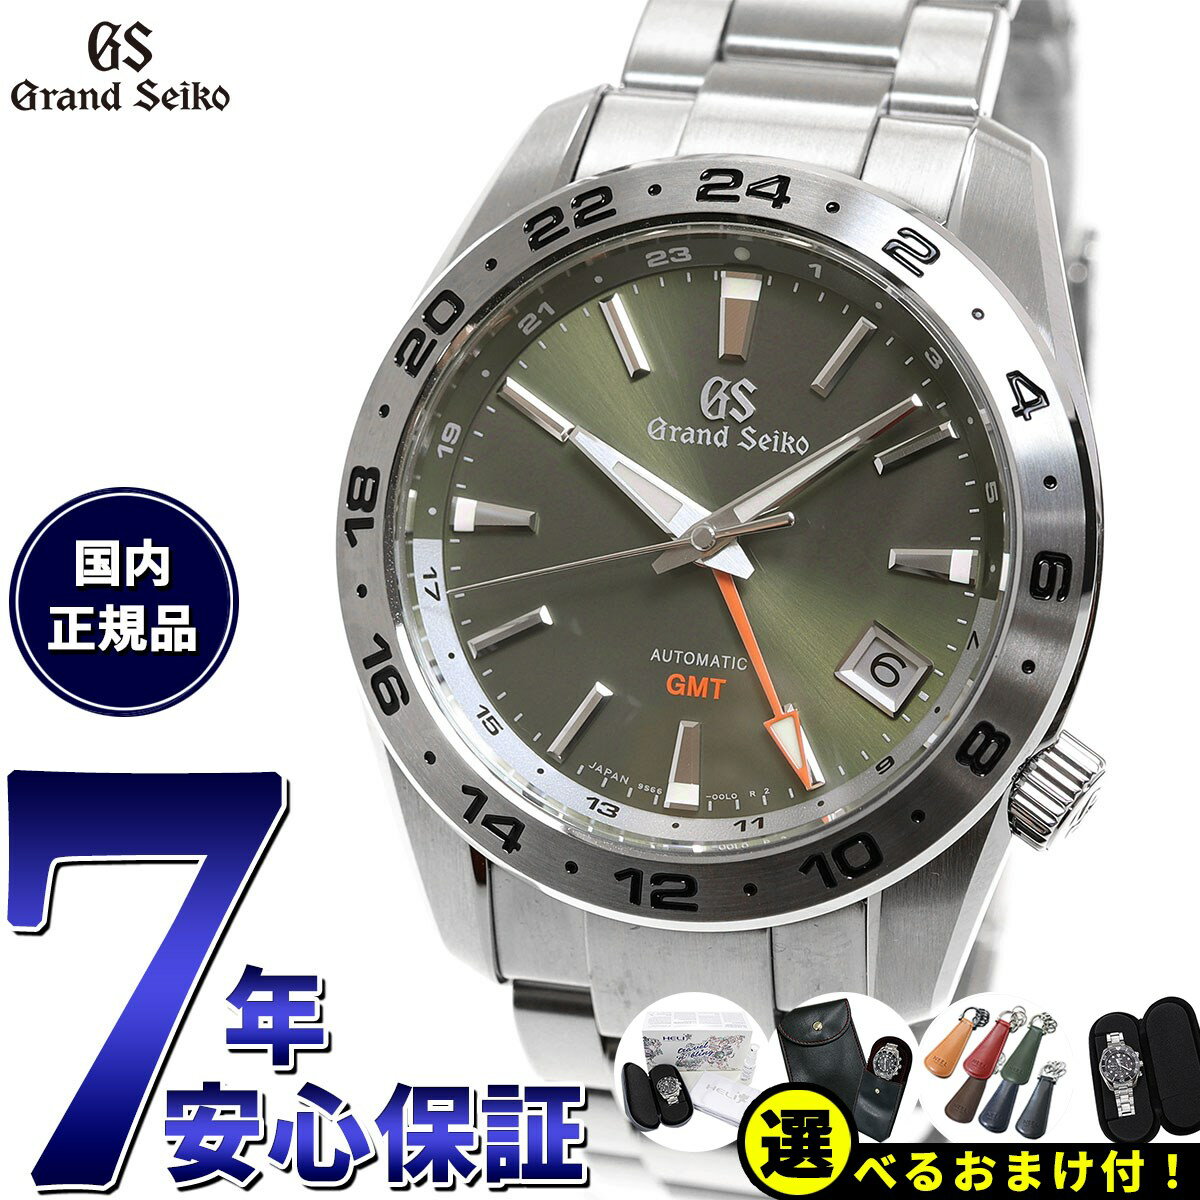 セイコー グランド セイコー 腕時計（メンズ） 【選べるノベルティー付き！】【36回分割手数料無料！】グランドセイコー 9S メカニカル GMT SBGM247 メンズ 腕時計 カーキ 9S66